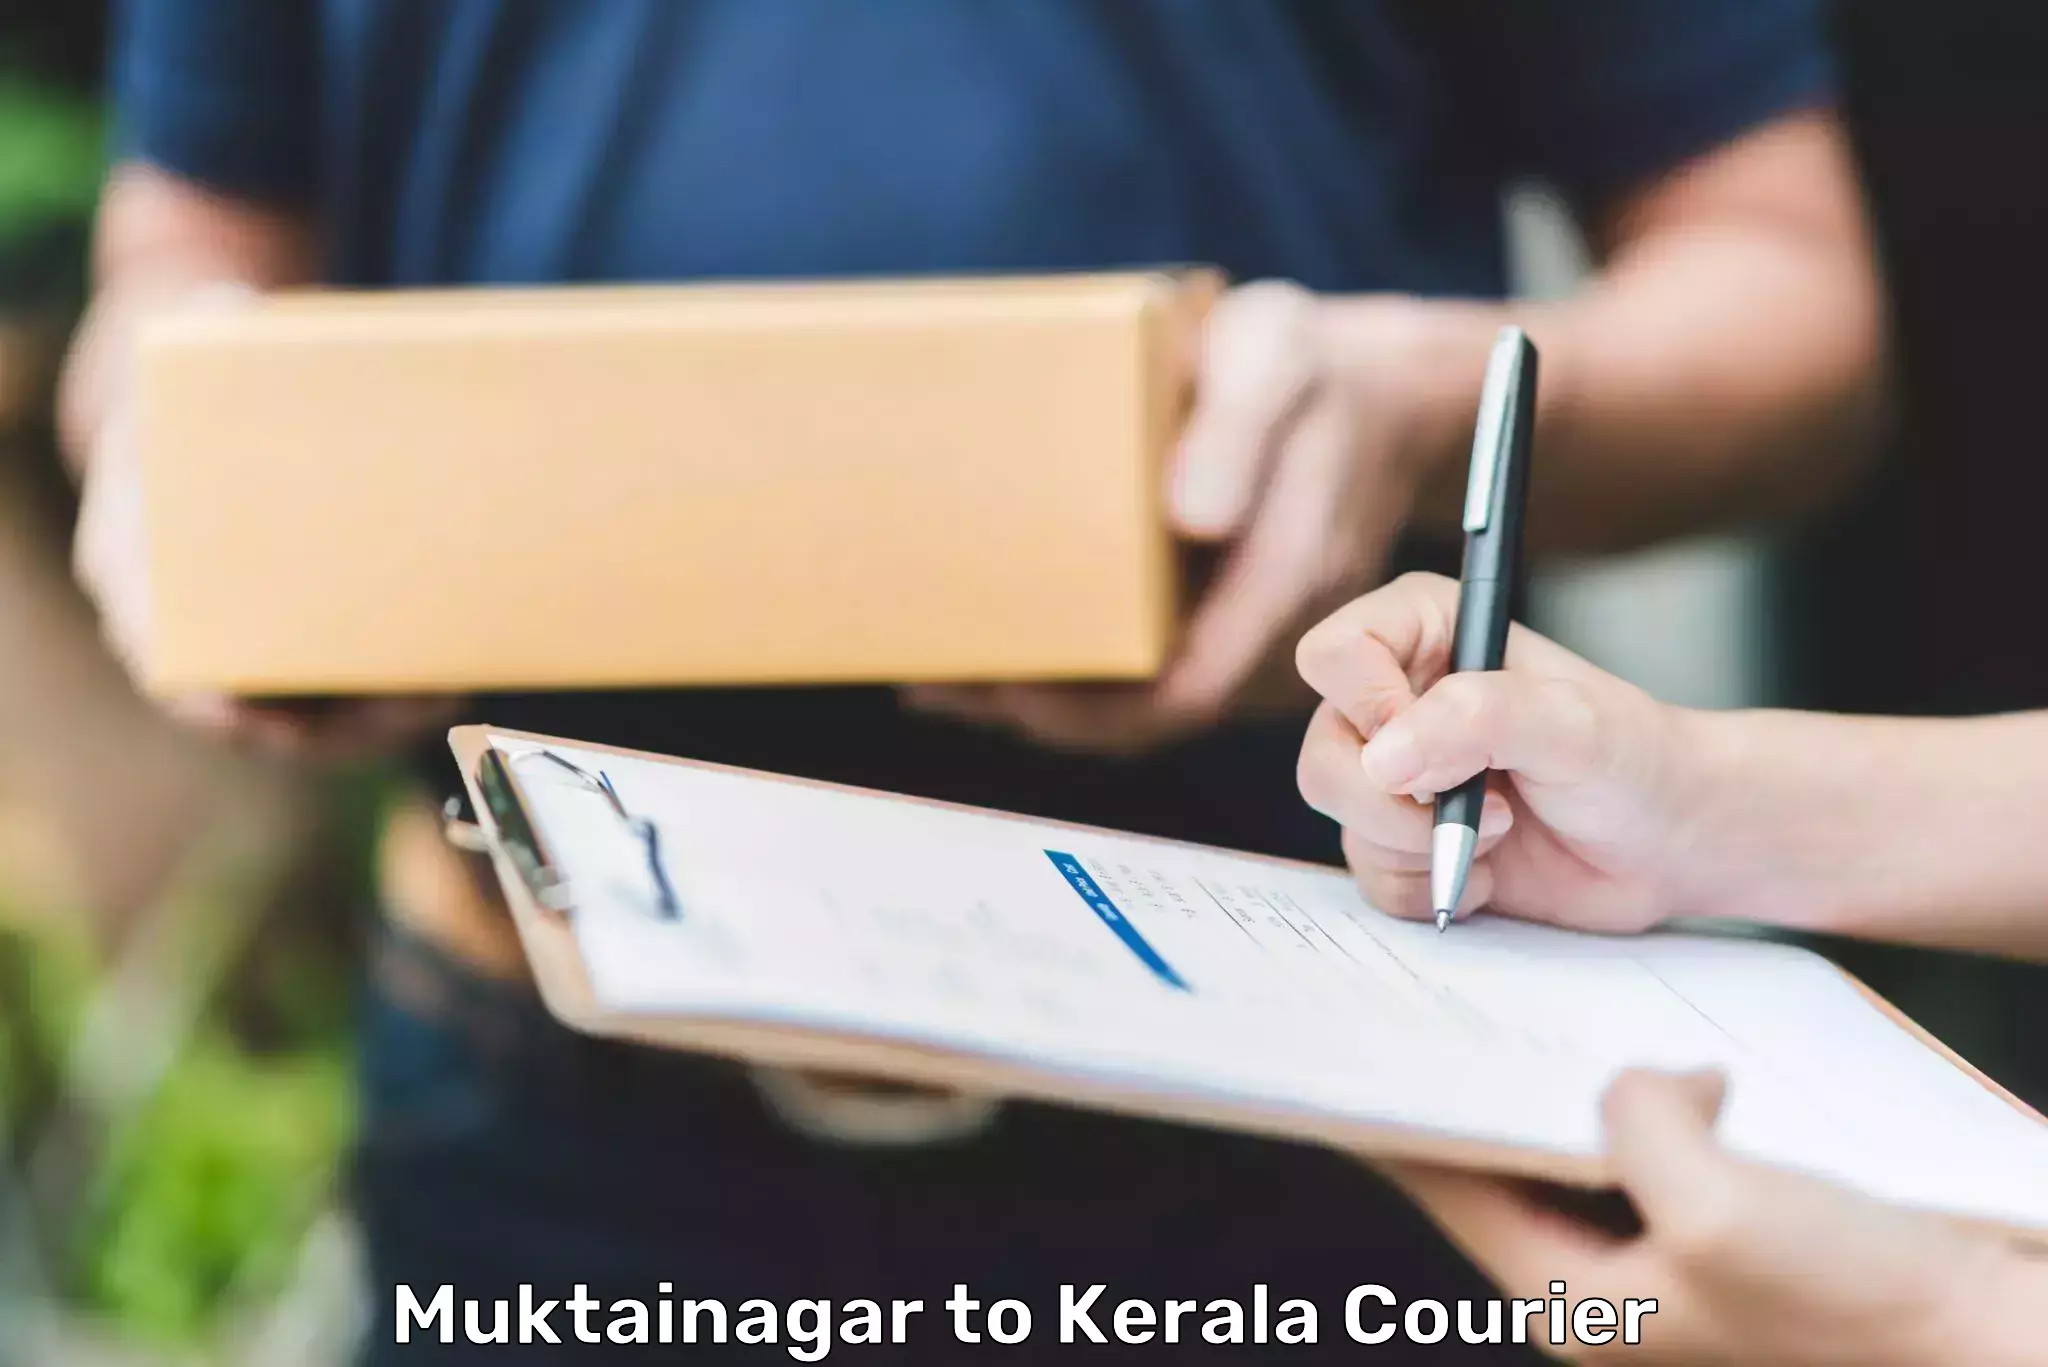 Digital courier platforms in Muktainagar to Kozhencherry